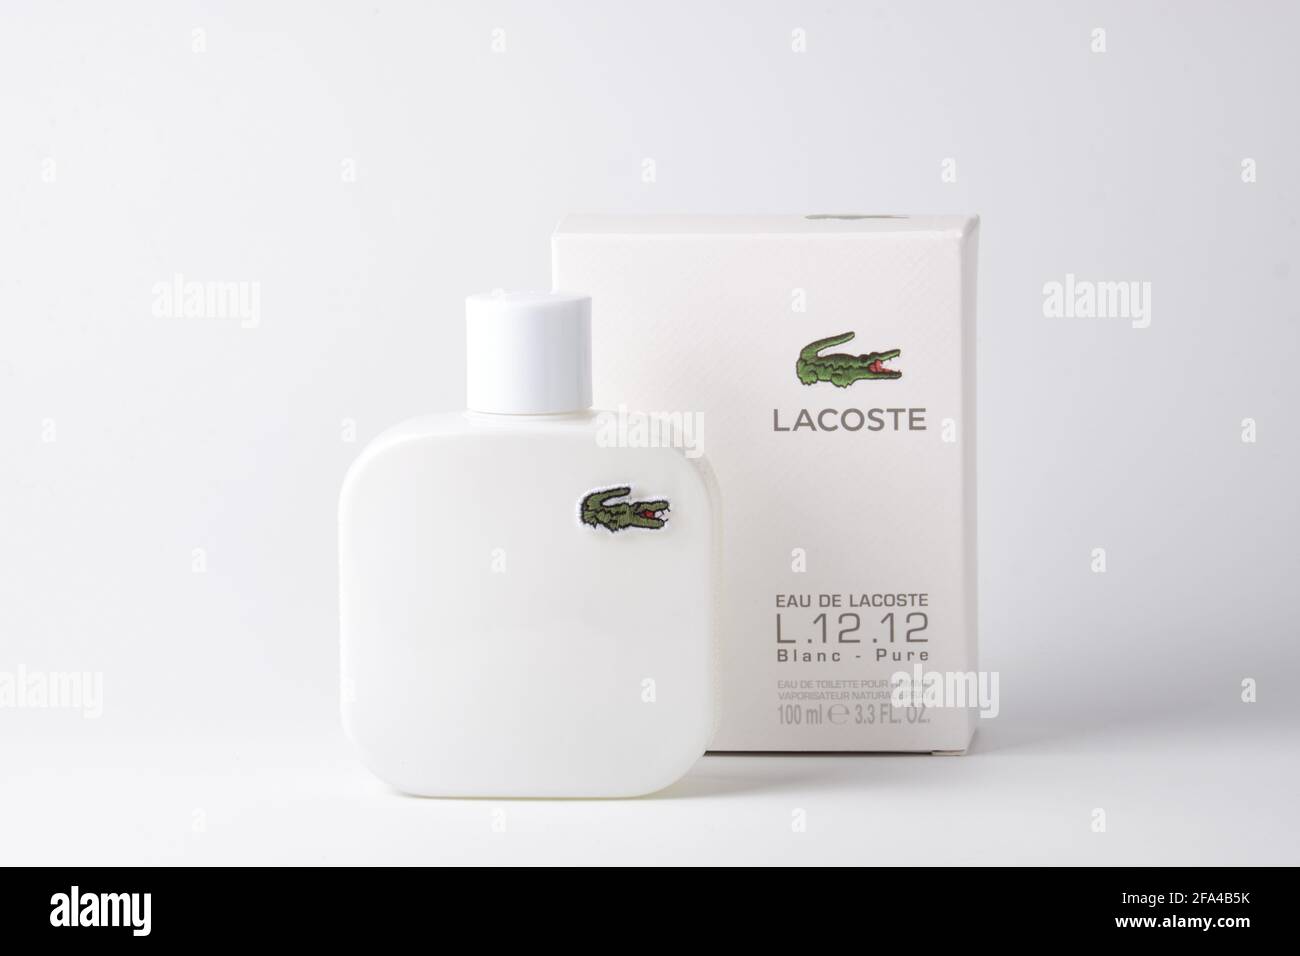 Eau De Lacoste L.12.12 Blanc against white background Stock Photo -